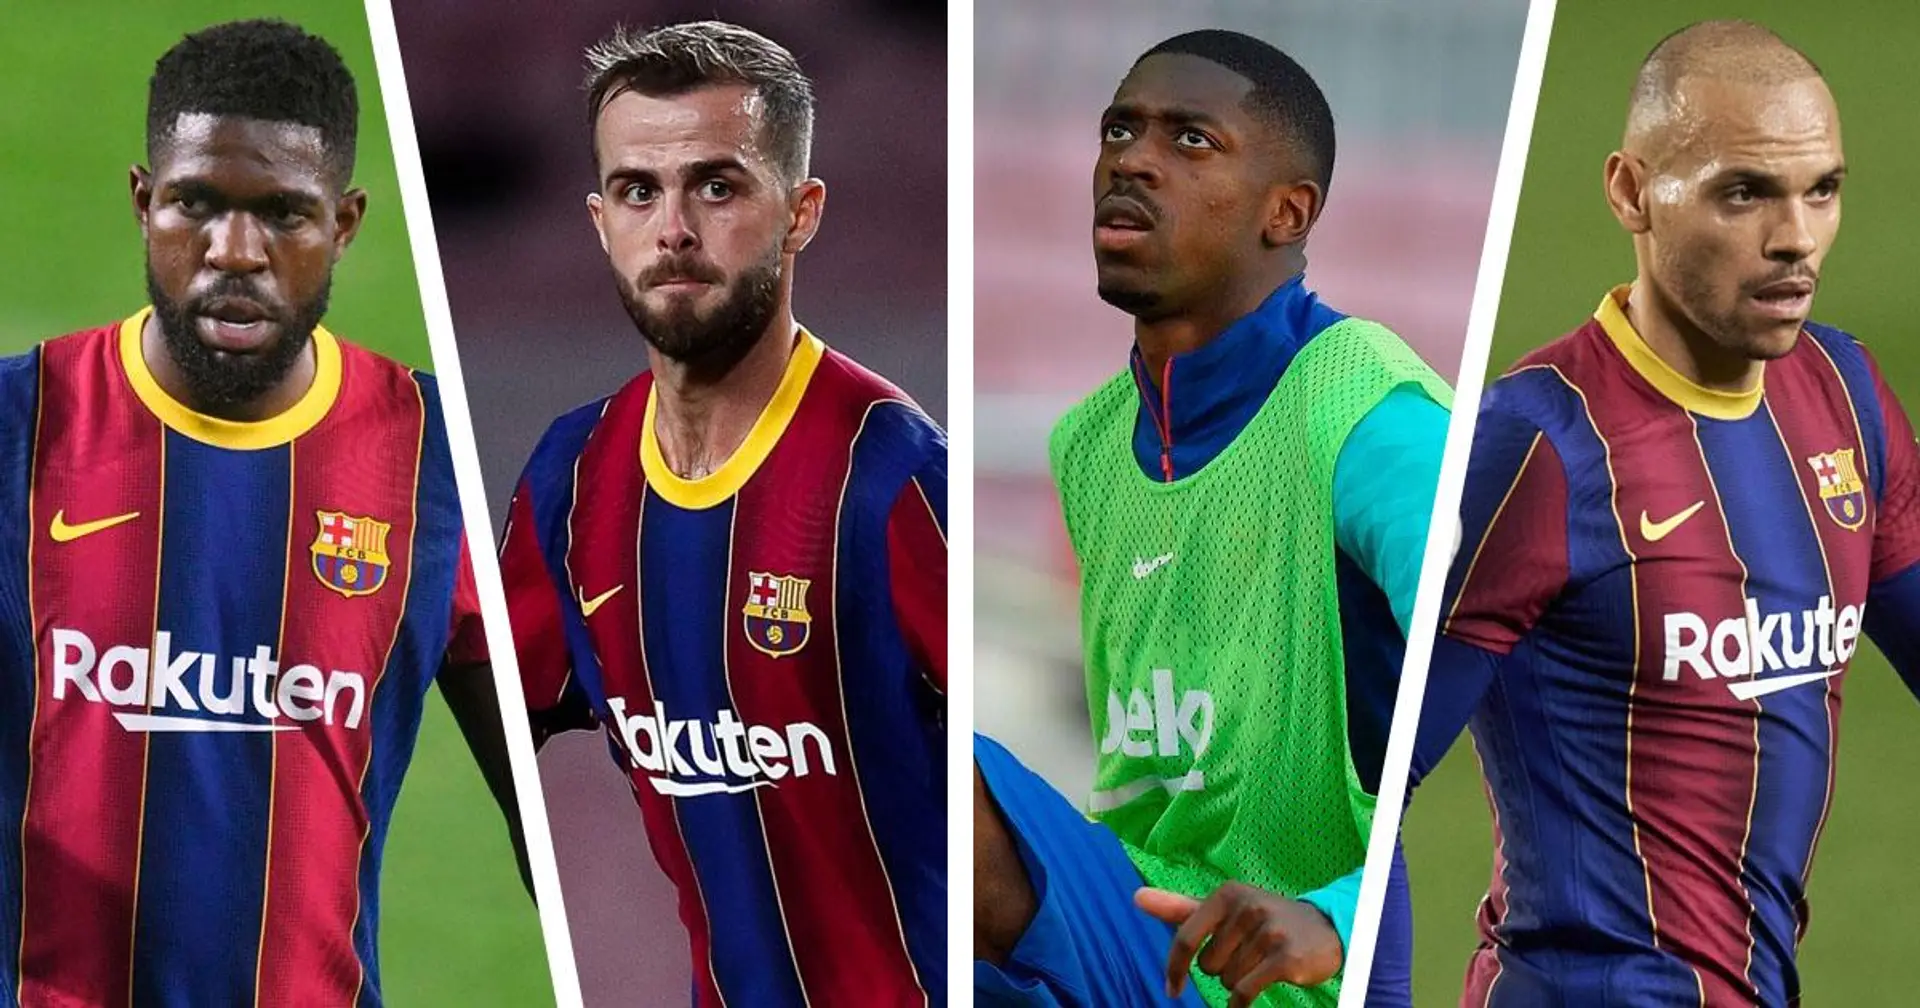 Le Barça choisit 6 joueurs à vendre en premier, Dembele et Roberto seront les prochains (fiabilité: 4 étoiles)